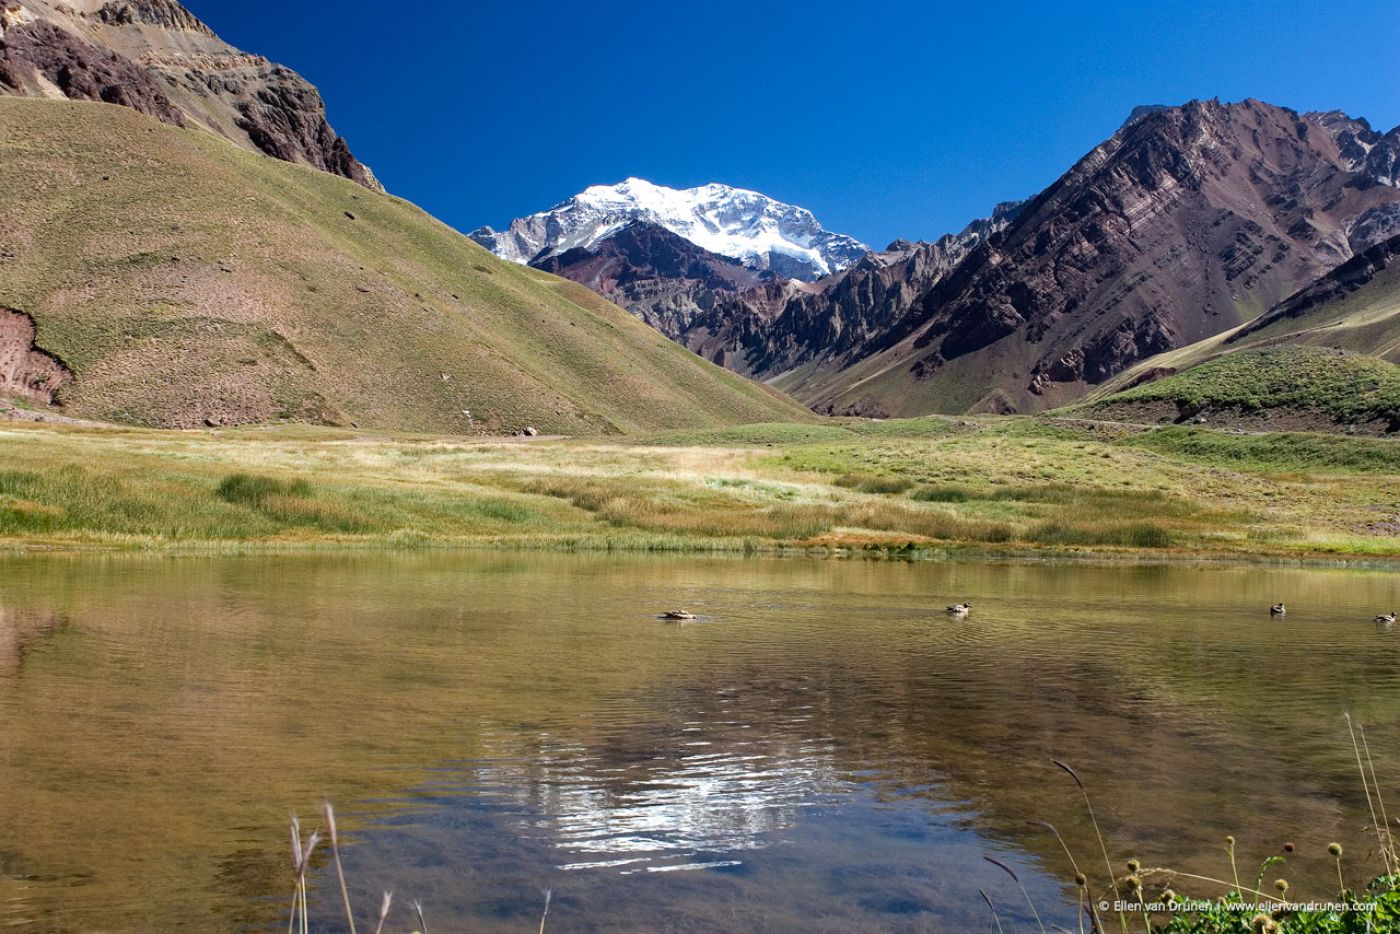 Aconcagua - 6962 m